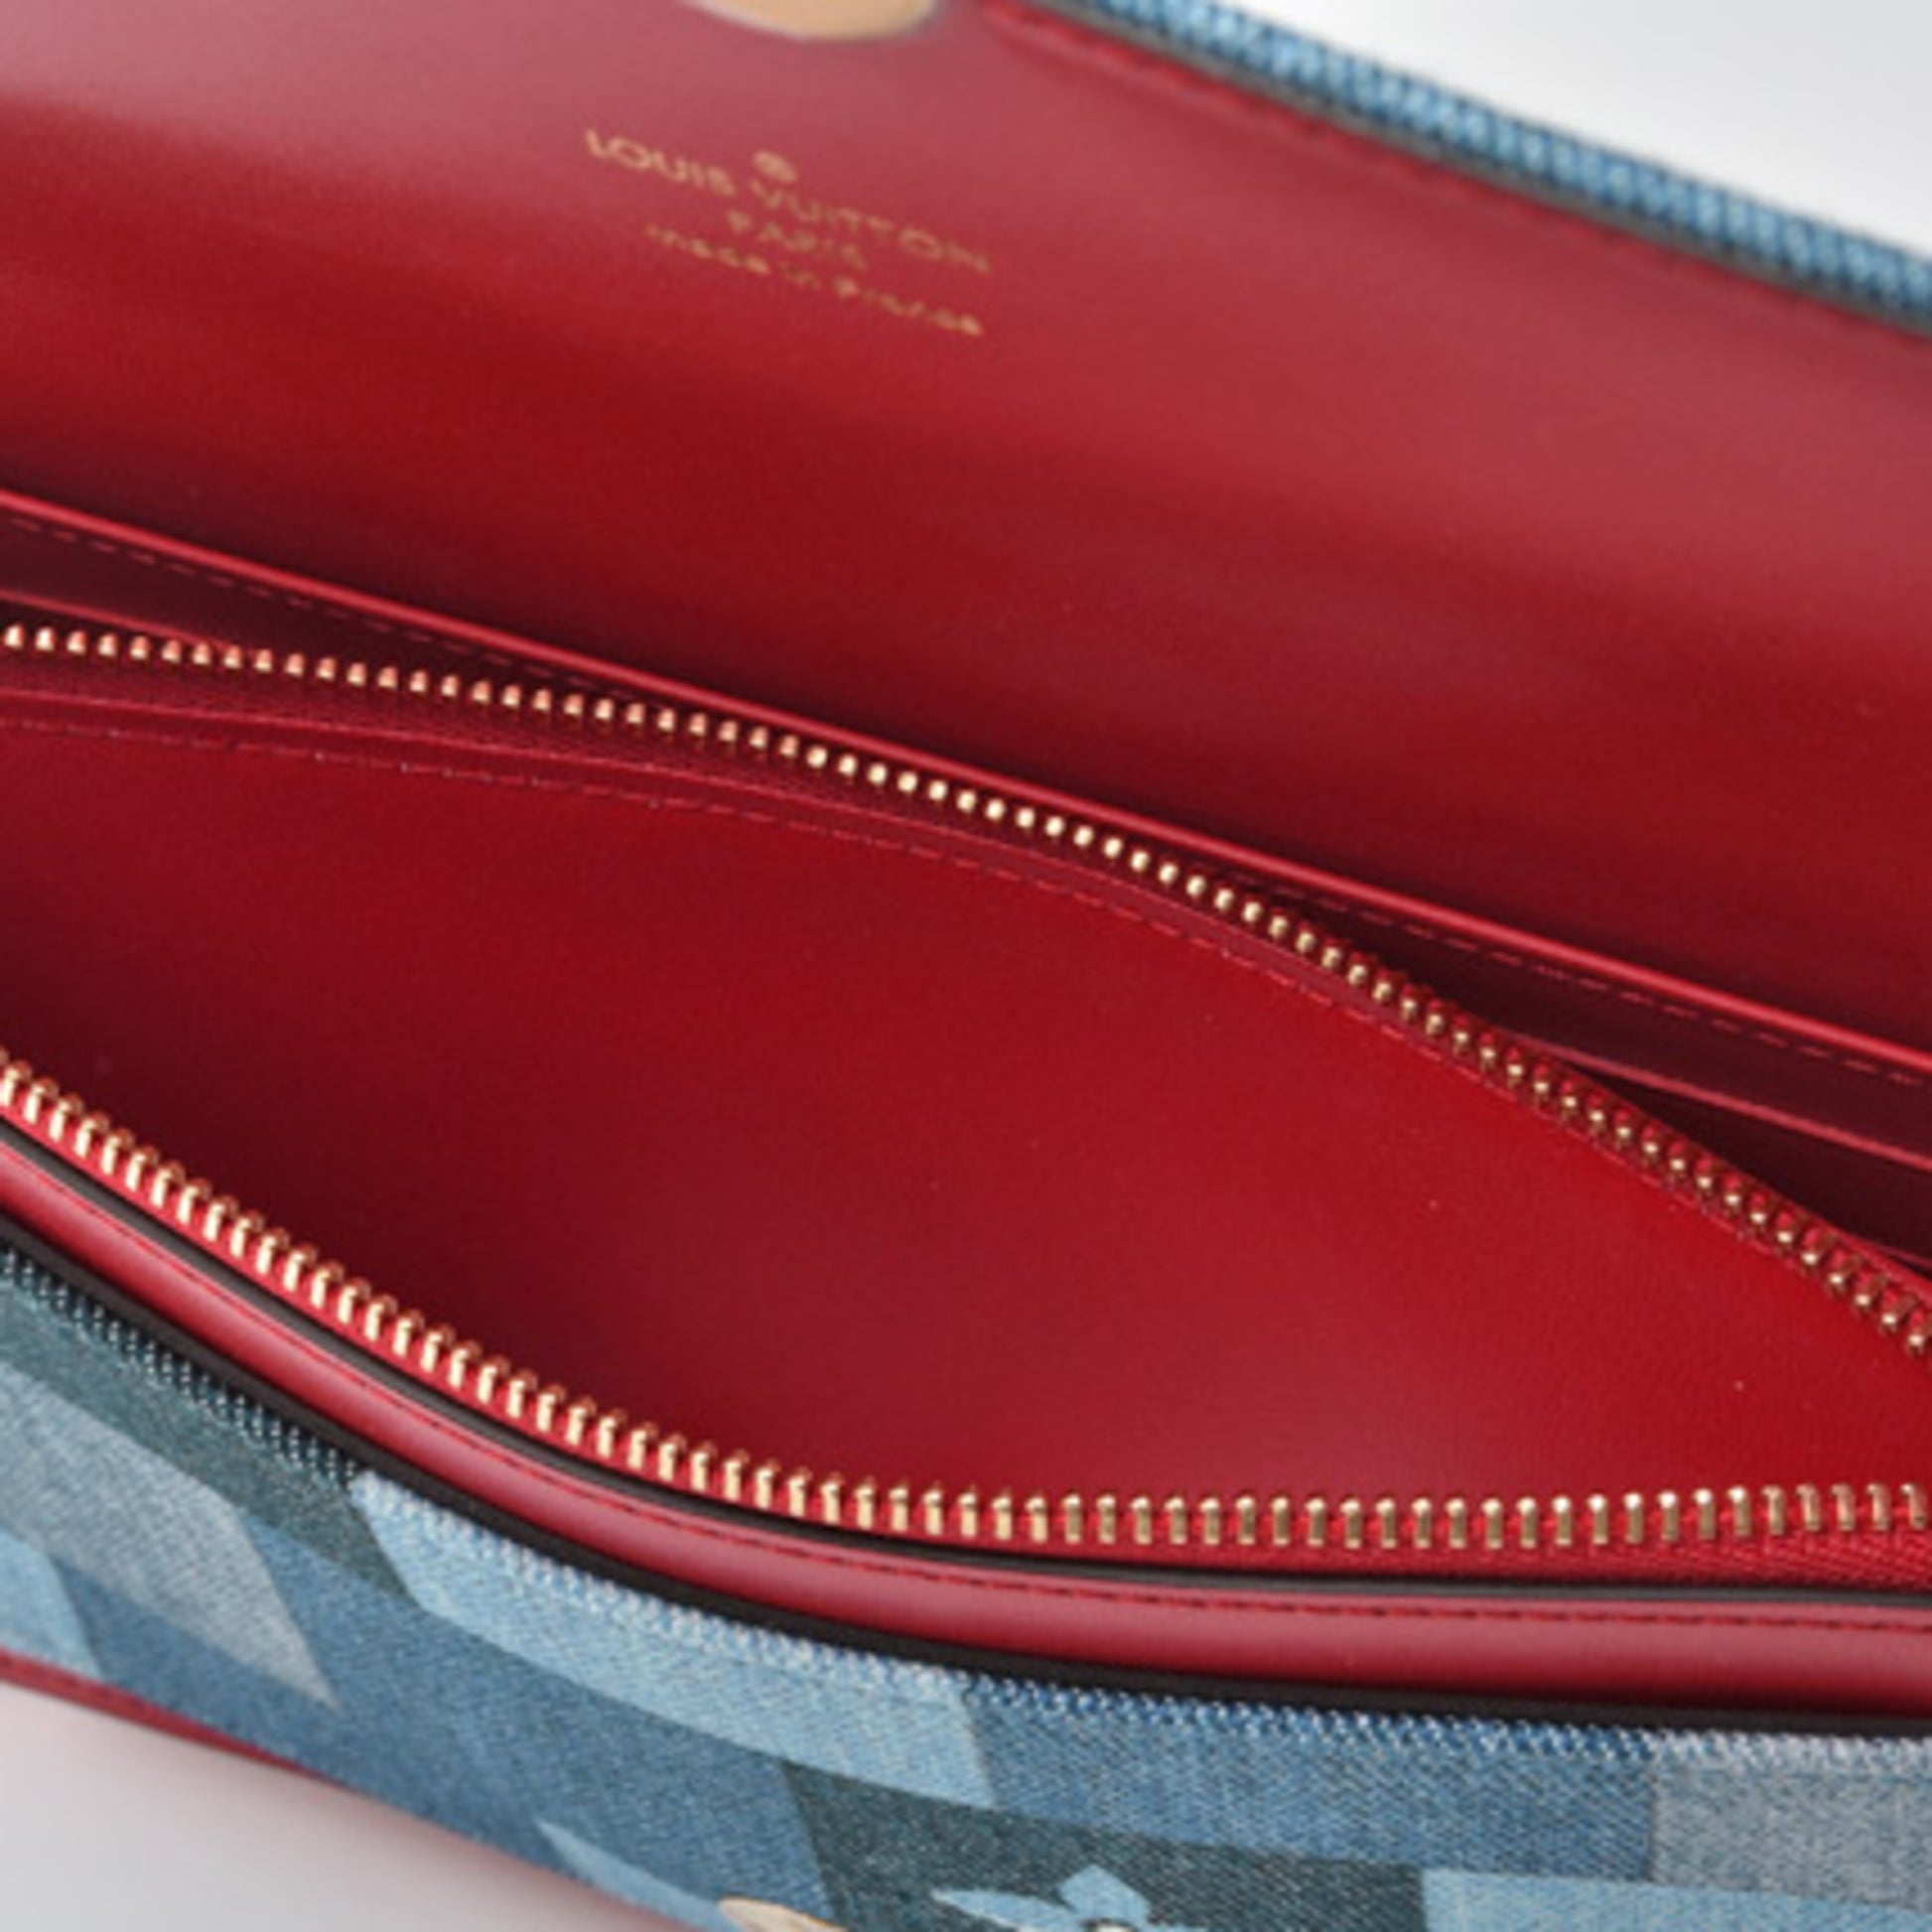 Louis Vuitton, Bags, Louis Vuitton Monogram Flore Compact Wallet